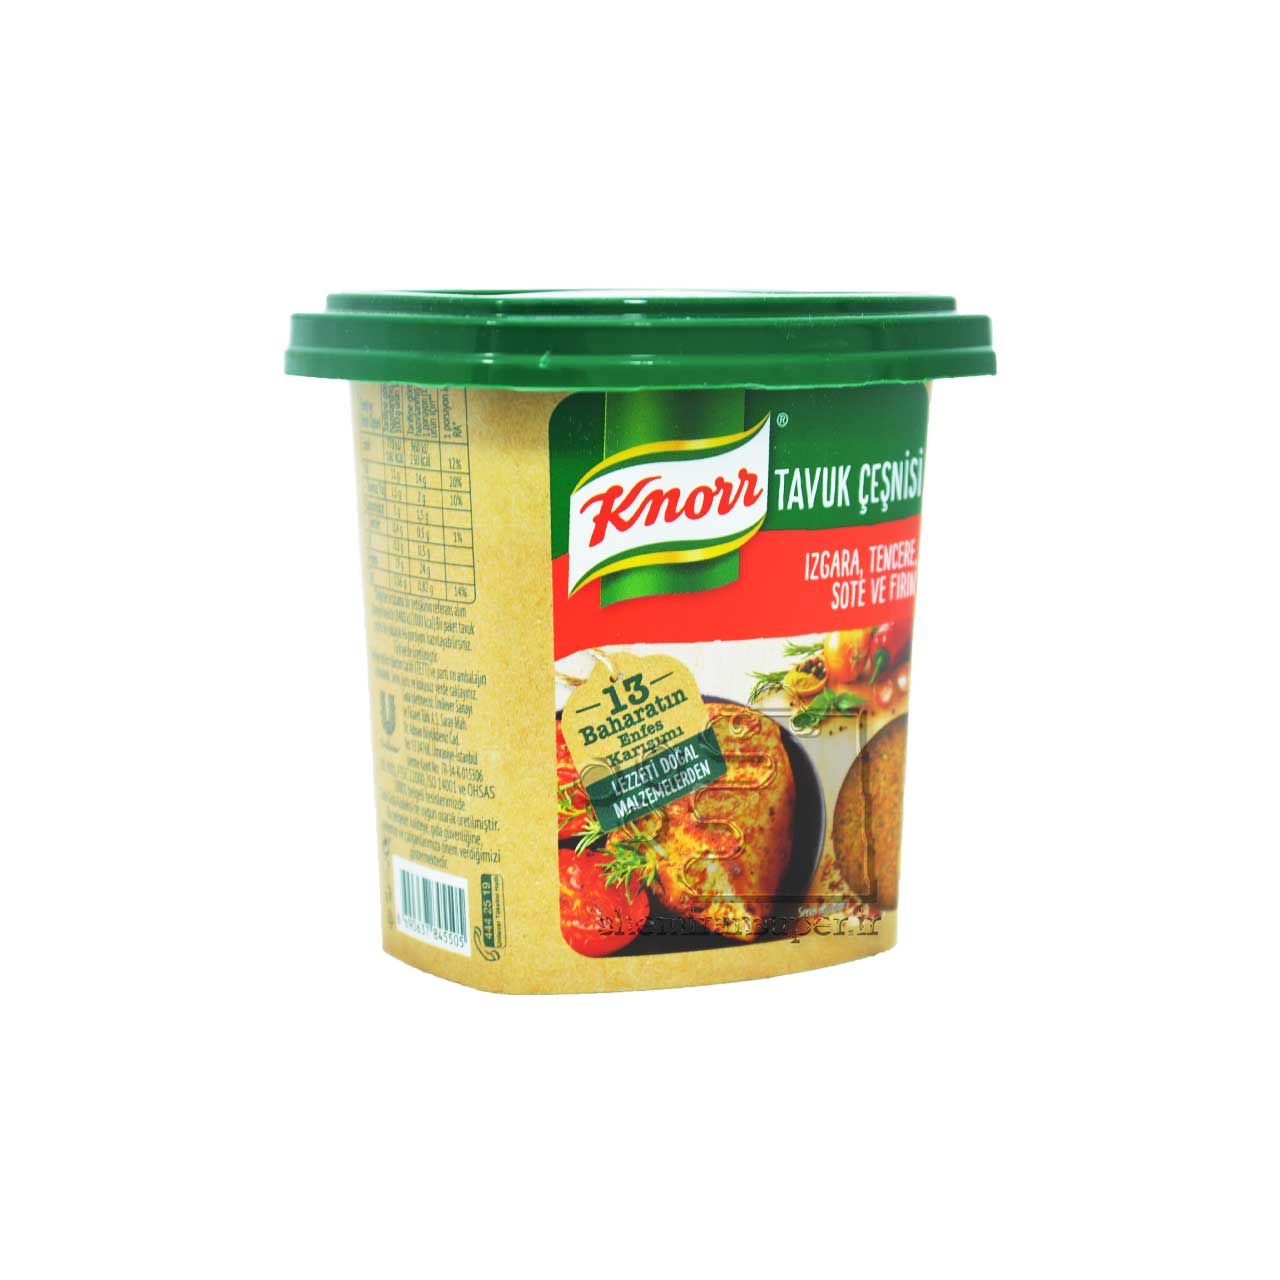 خرید ادویه مرغ کنور Knorr قیمت عمده سفارش و قیمت ادویه مرغ کنور Knorr | قیمت عمده ادویه کنور | واردکننده اصلی ادویه کنور در ایران | Knorr Chicken Powder